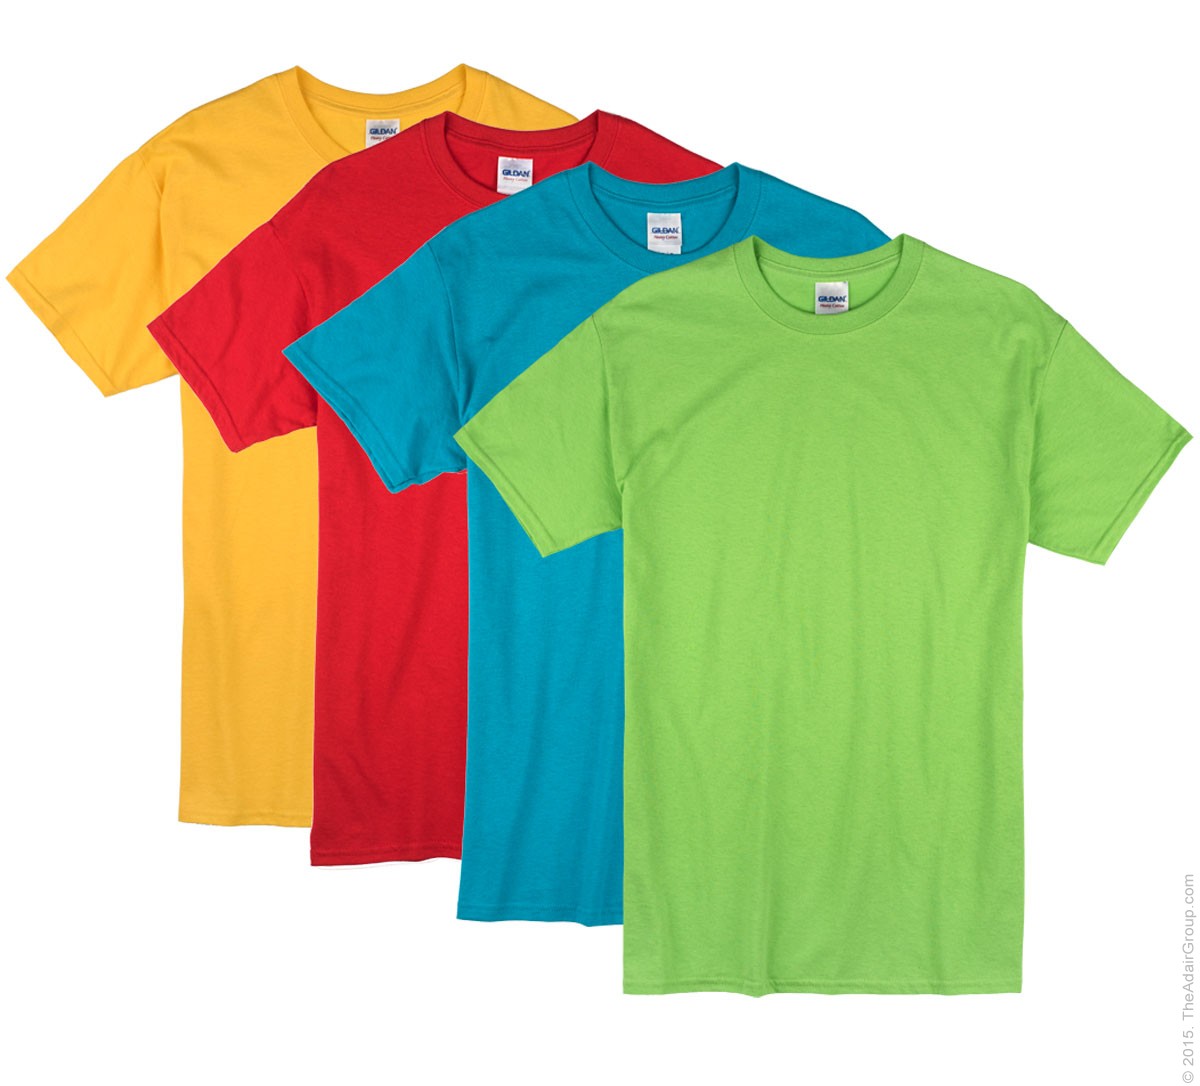 lav lektier Ren og skær strand Bright Color Adult T-Shirts | The Adair Group